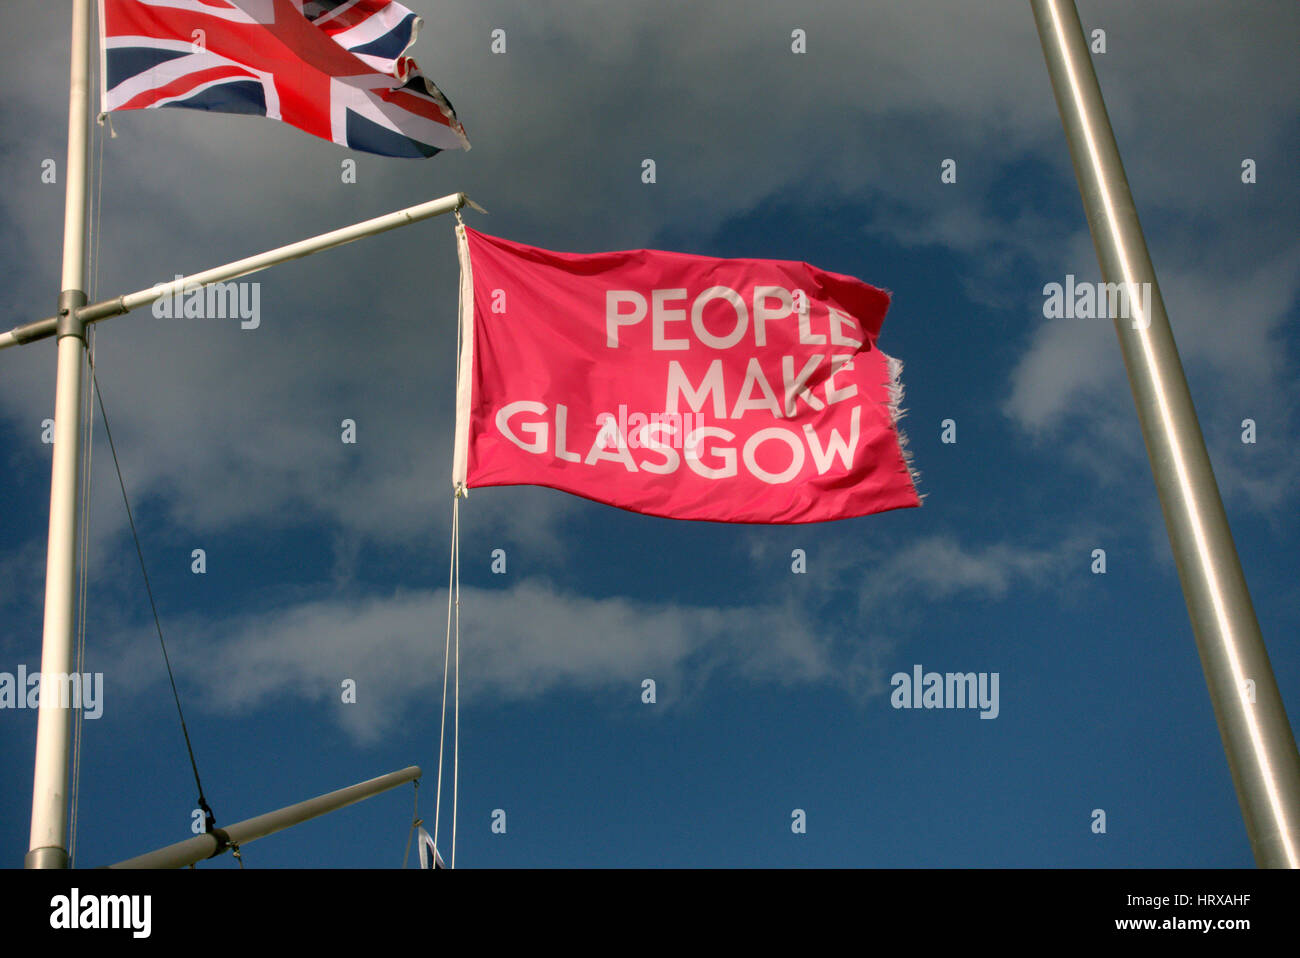 Les gens font de Glasgow et de l'union blue cloudy sky Banque D'Images